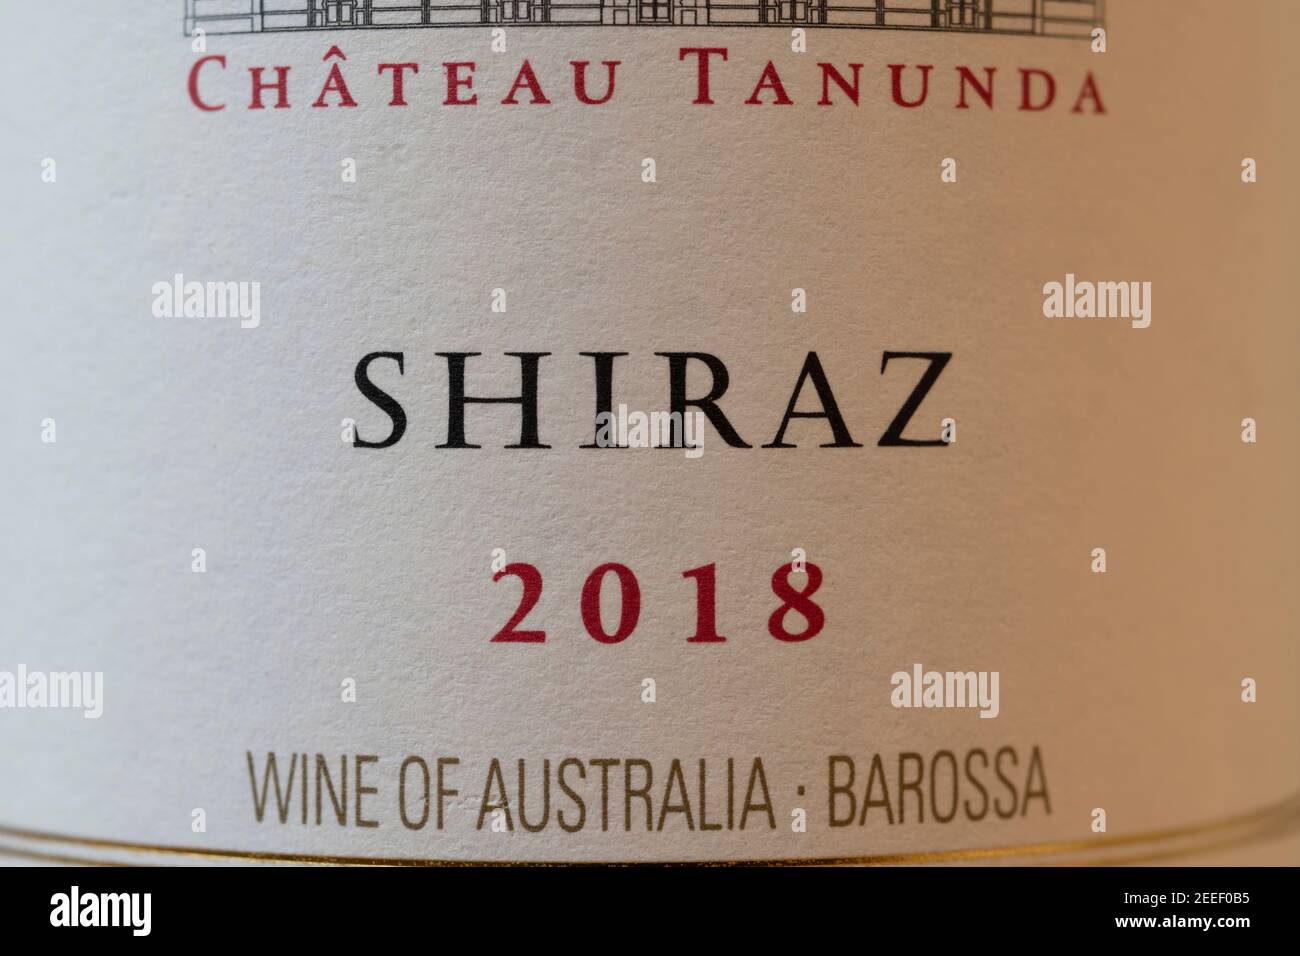 Chateau Tanunda Shiraz 2018 etiqueta de botella de vino australiano primer plano Foto de stock